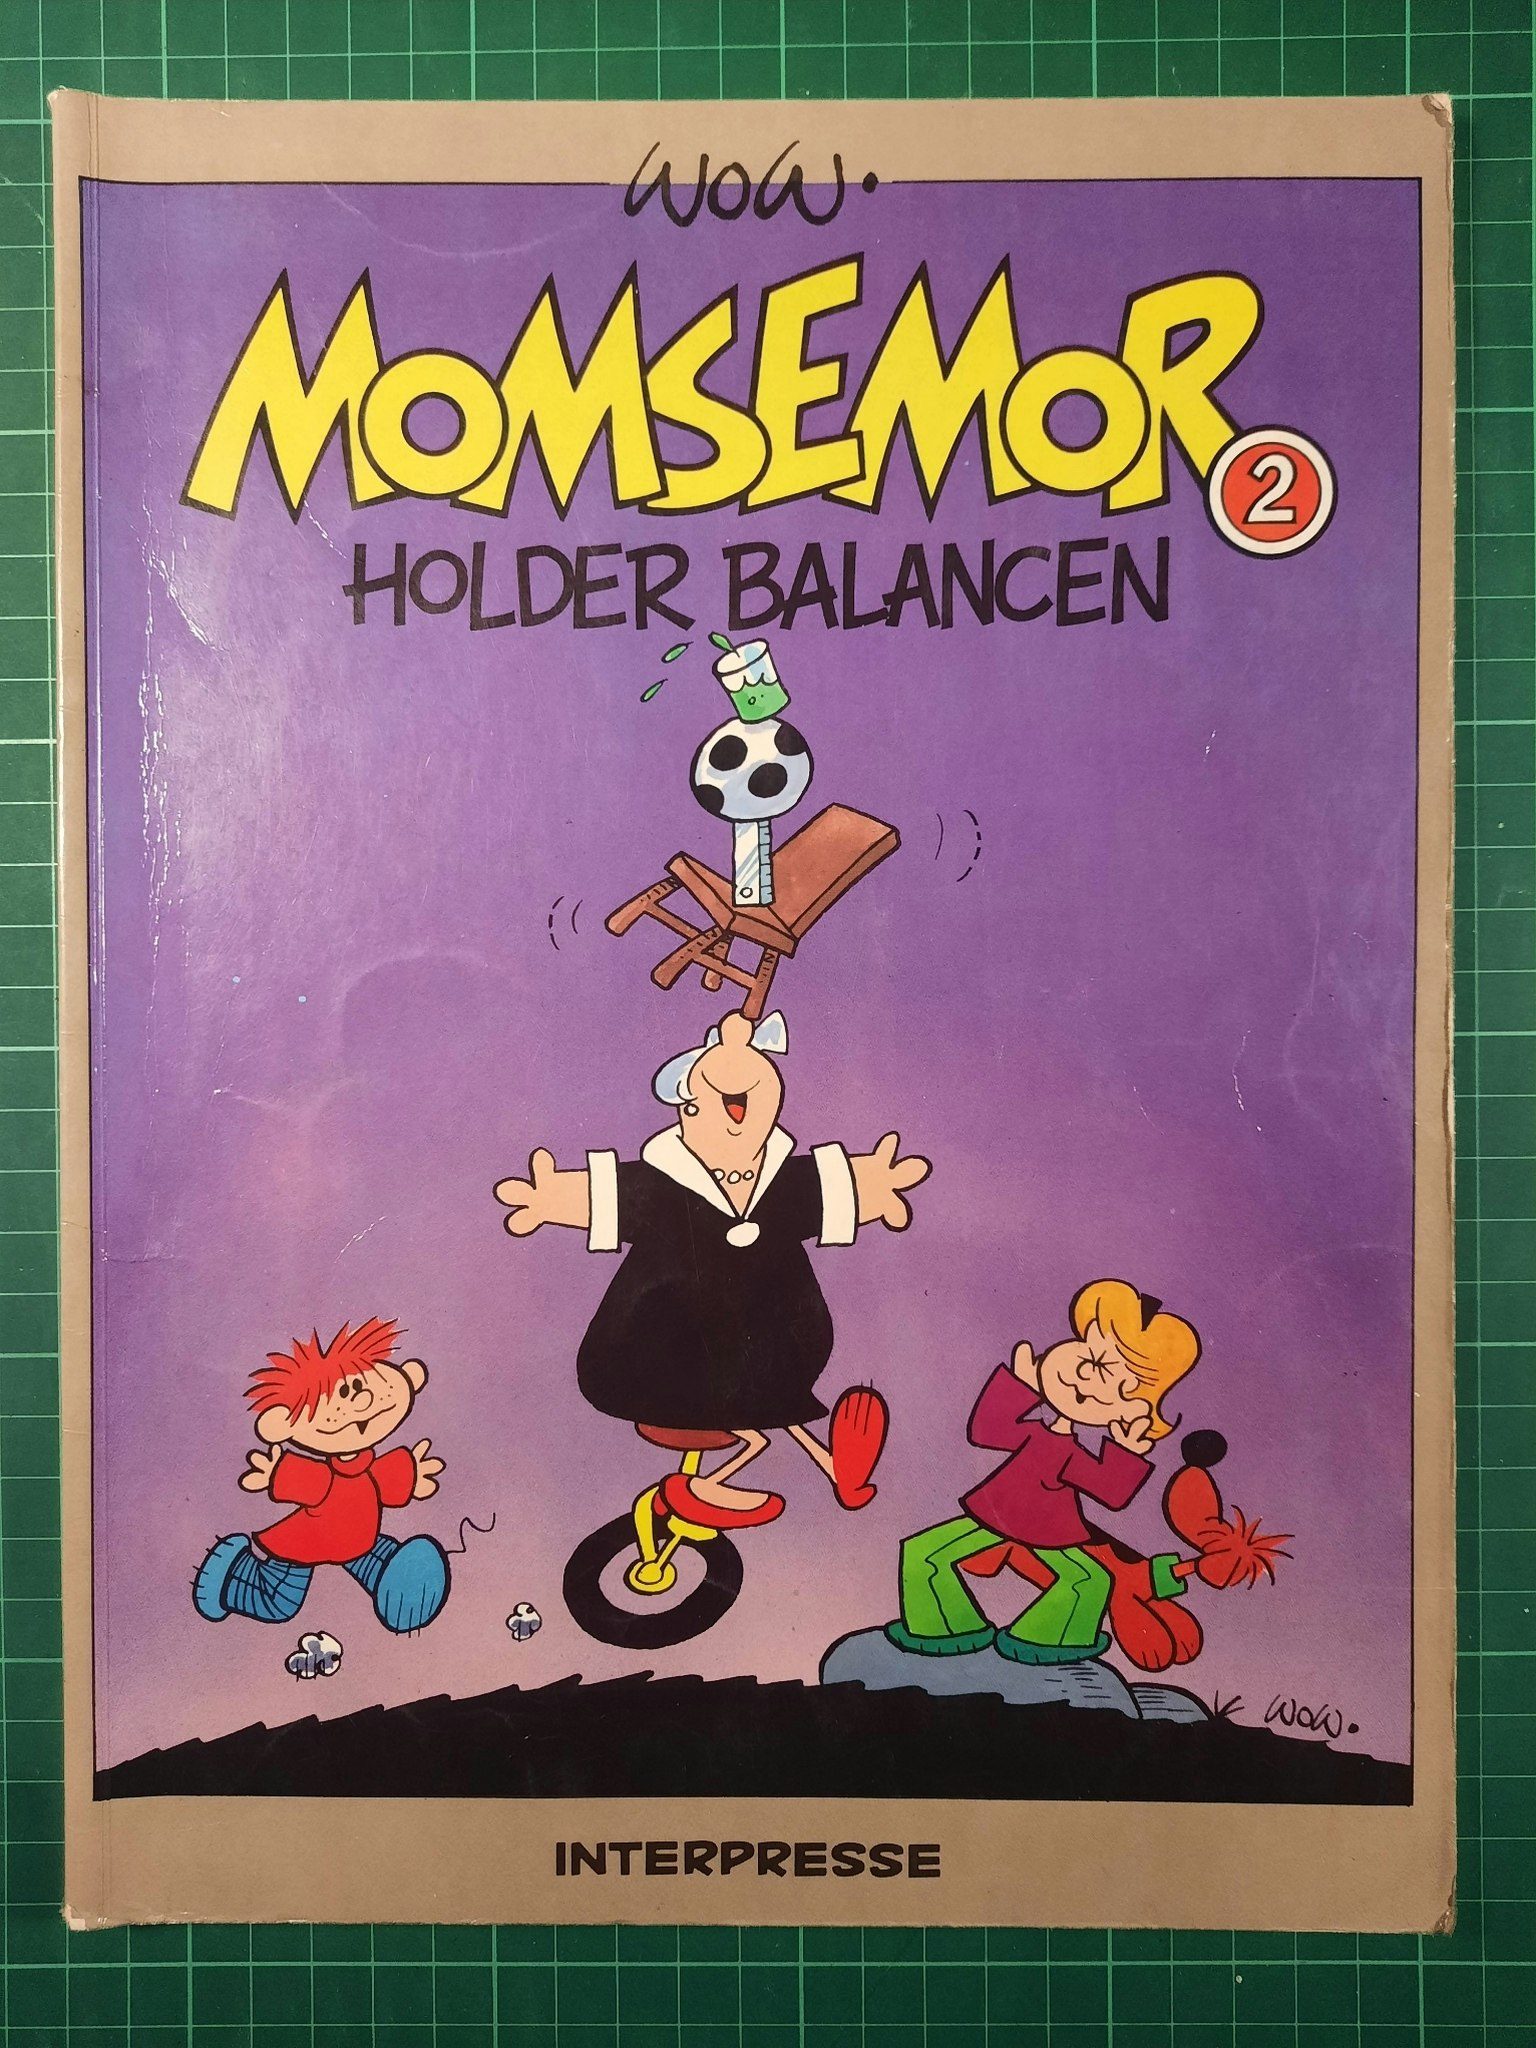 Momsemor 2 : Holder balancen (Dansk utgave)